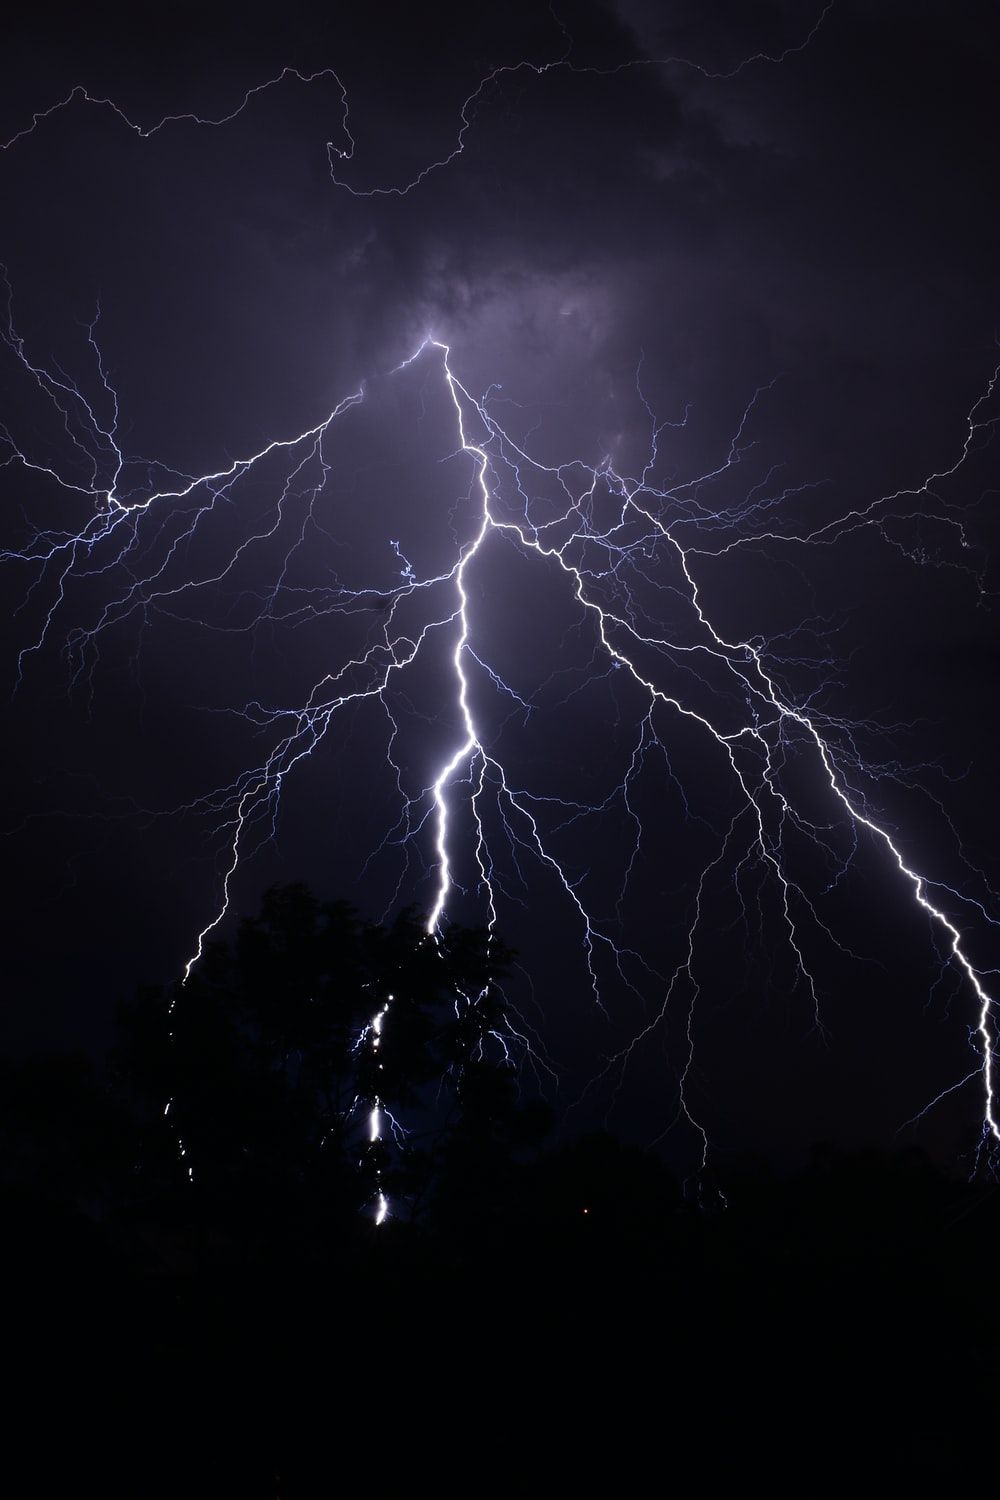 Lightning Image. Download Free Image